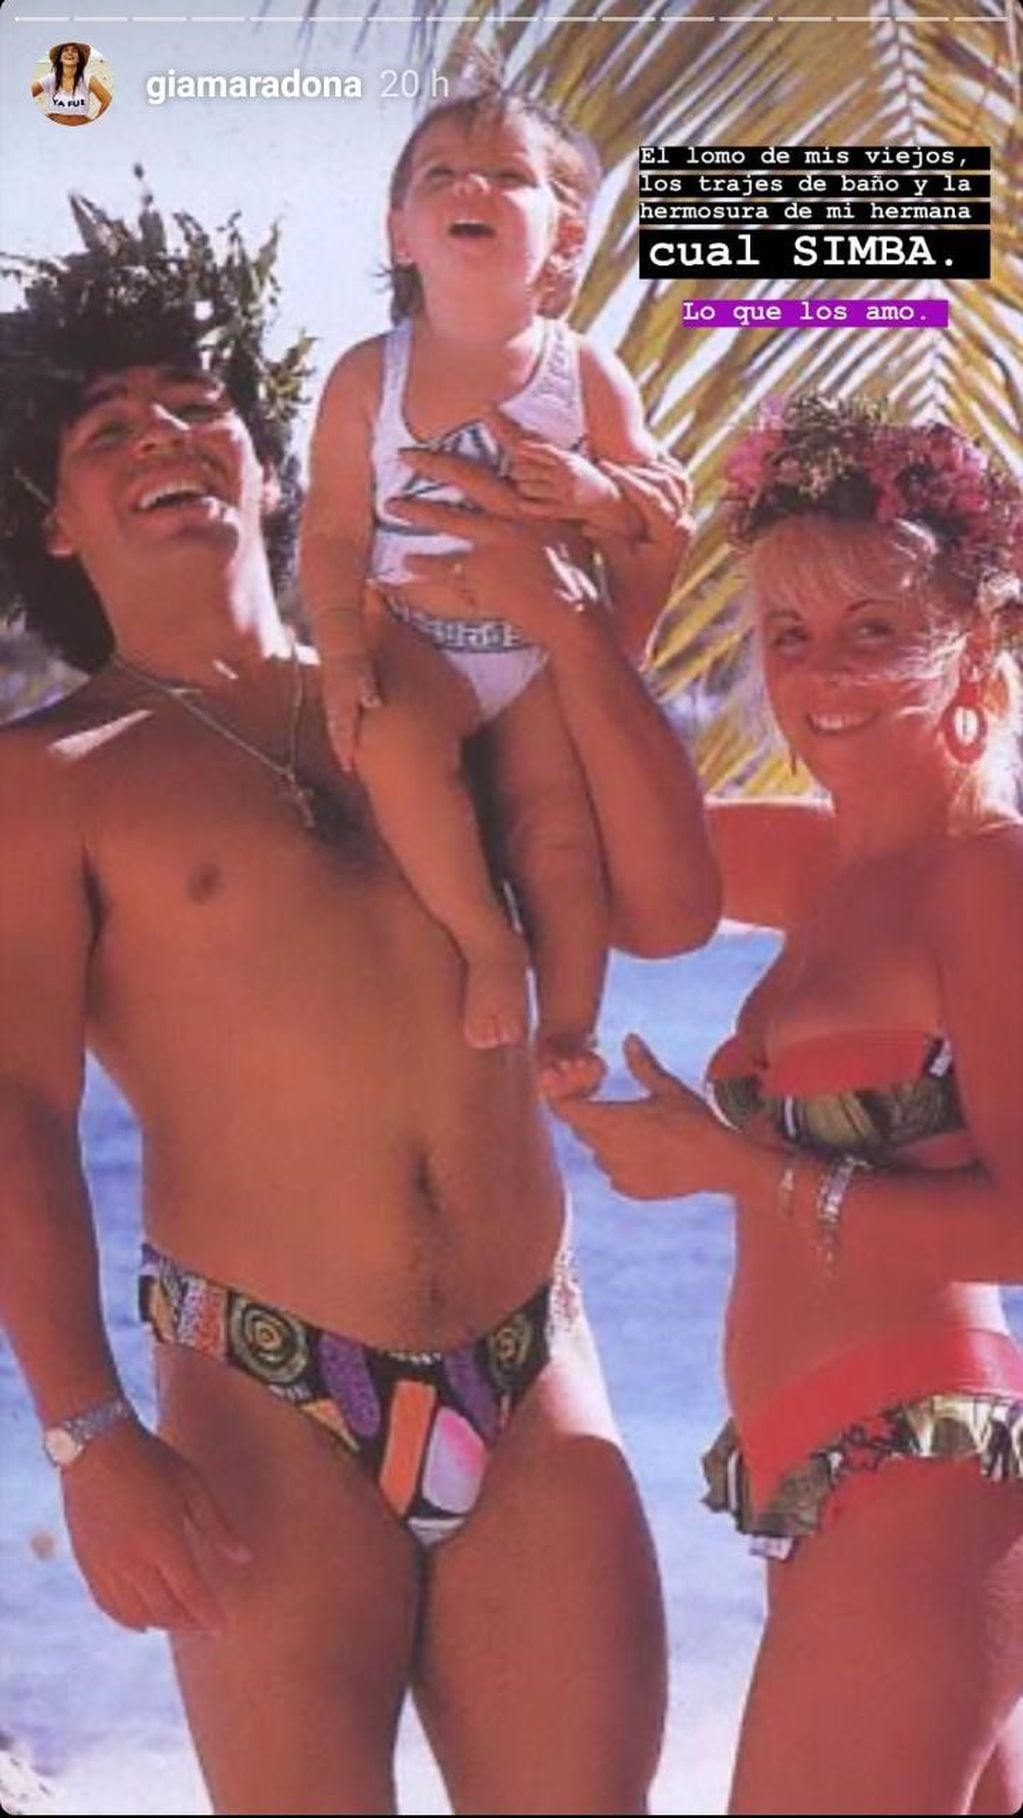 La foto retro que compartió Gianinna Maradona: “El lomo de mis viejos…”